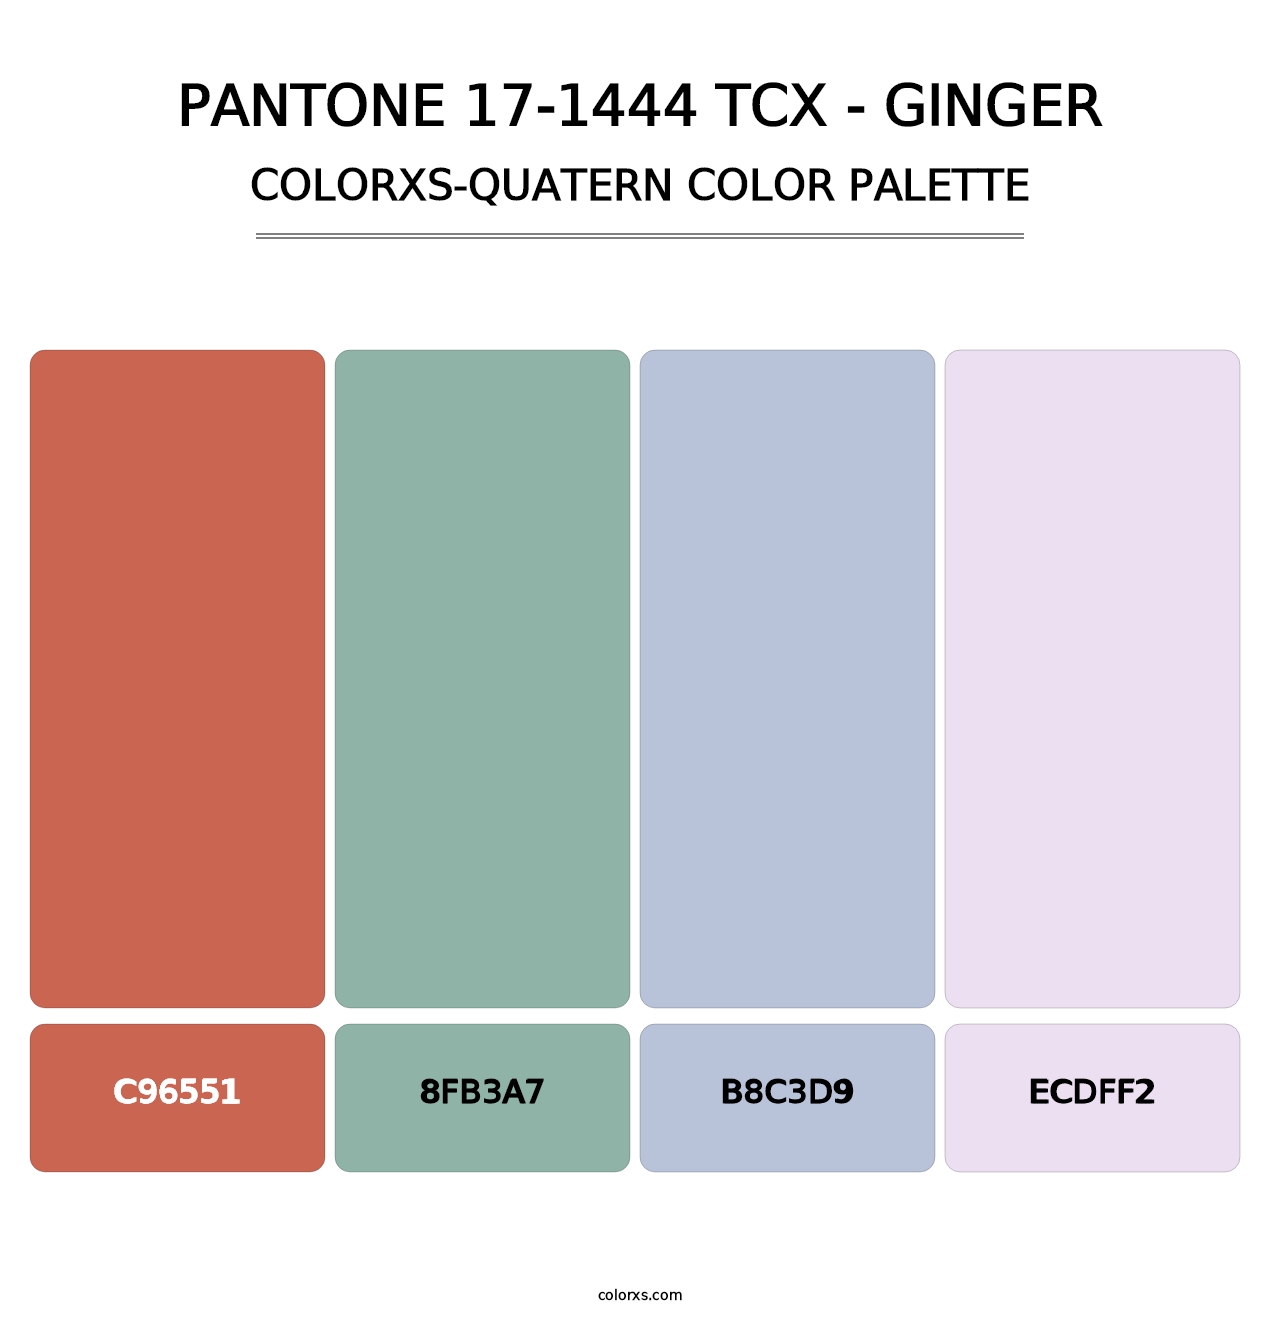 PANTONE 17-1444 TCX - Ginger - Colorxs Quatern Palette